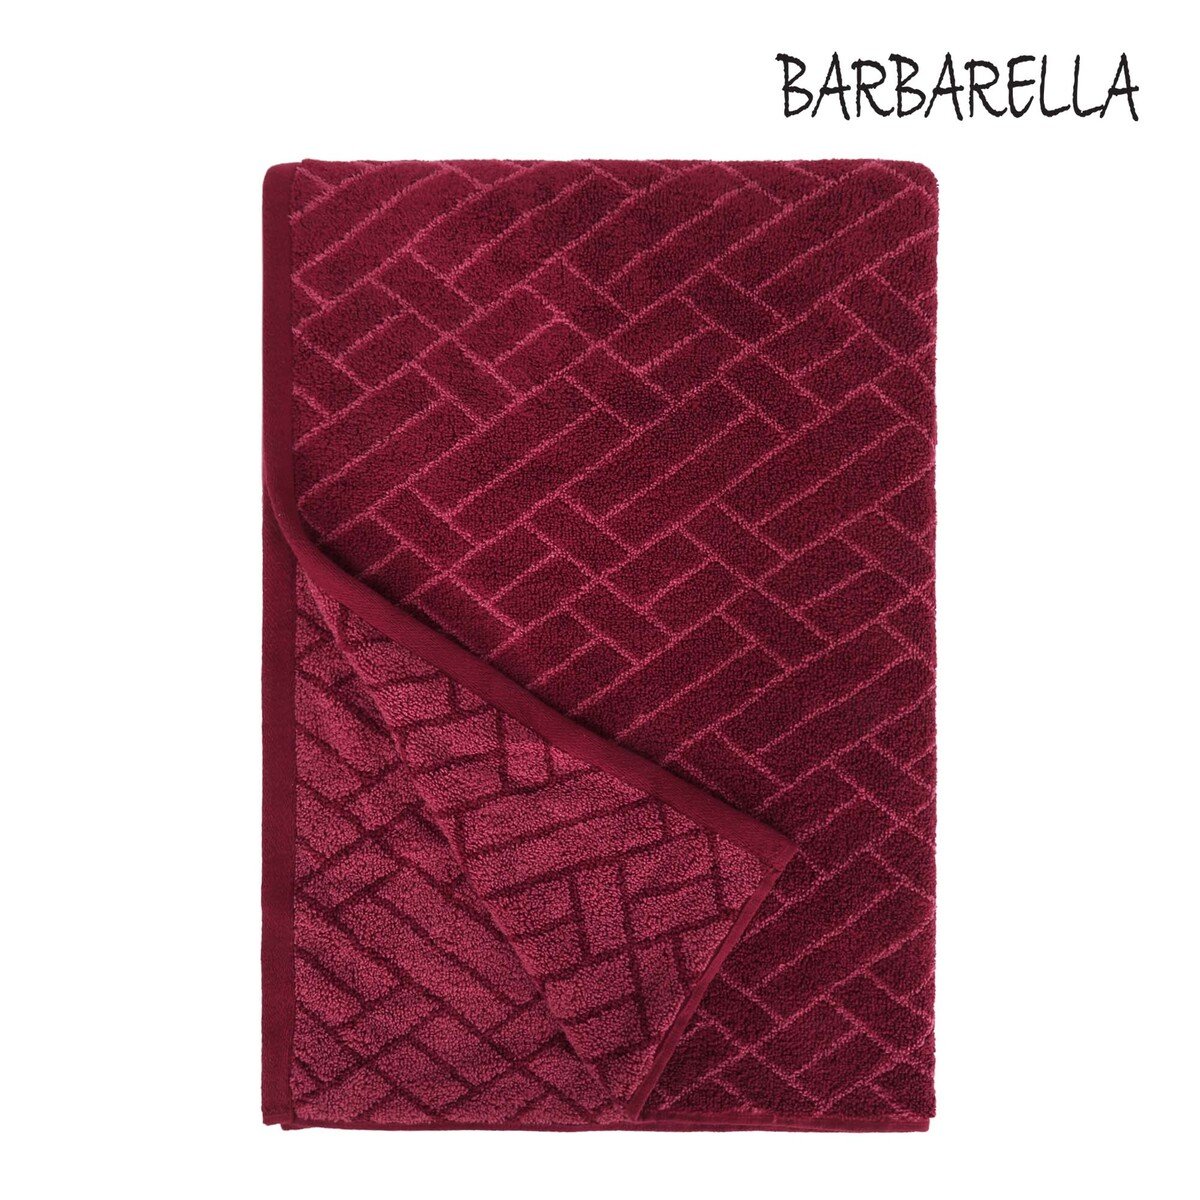 Barbarella Bath Towel Tile Jacquard GRANET Size: W76 x L142cm